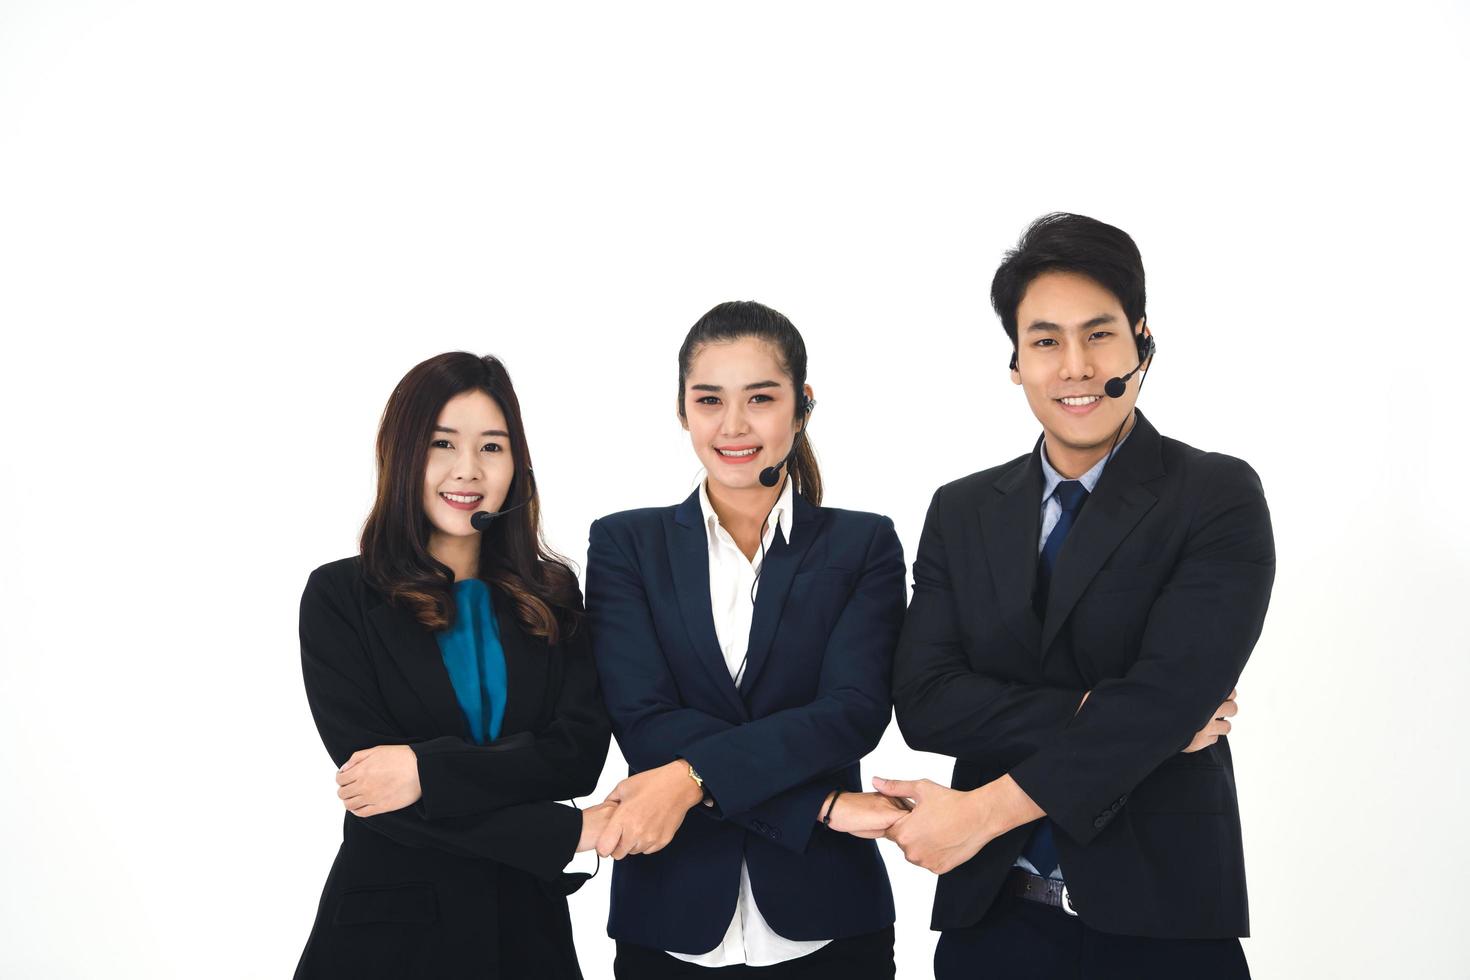 portrait de sourire positif jeune personnel d'affaires équipe de centre d'appels asiatique femme et homme photo